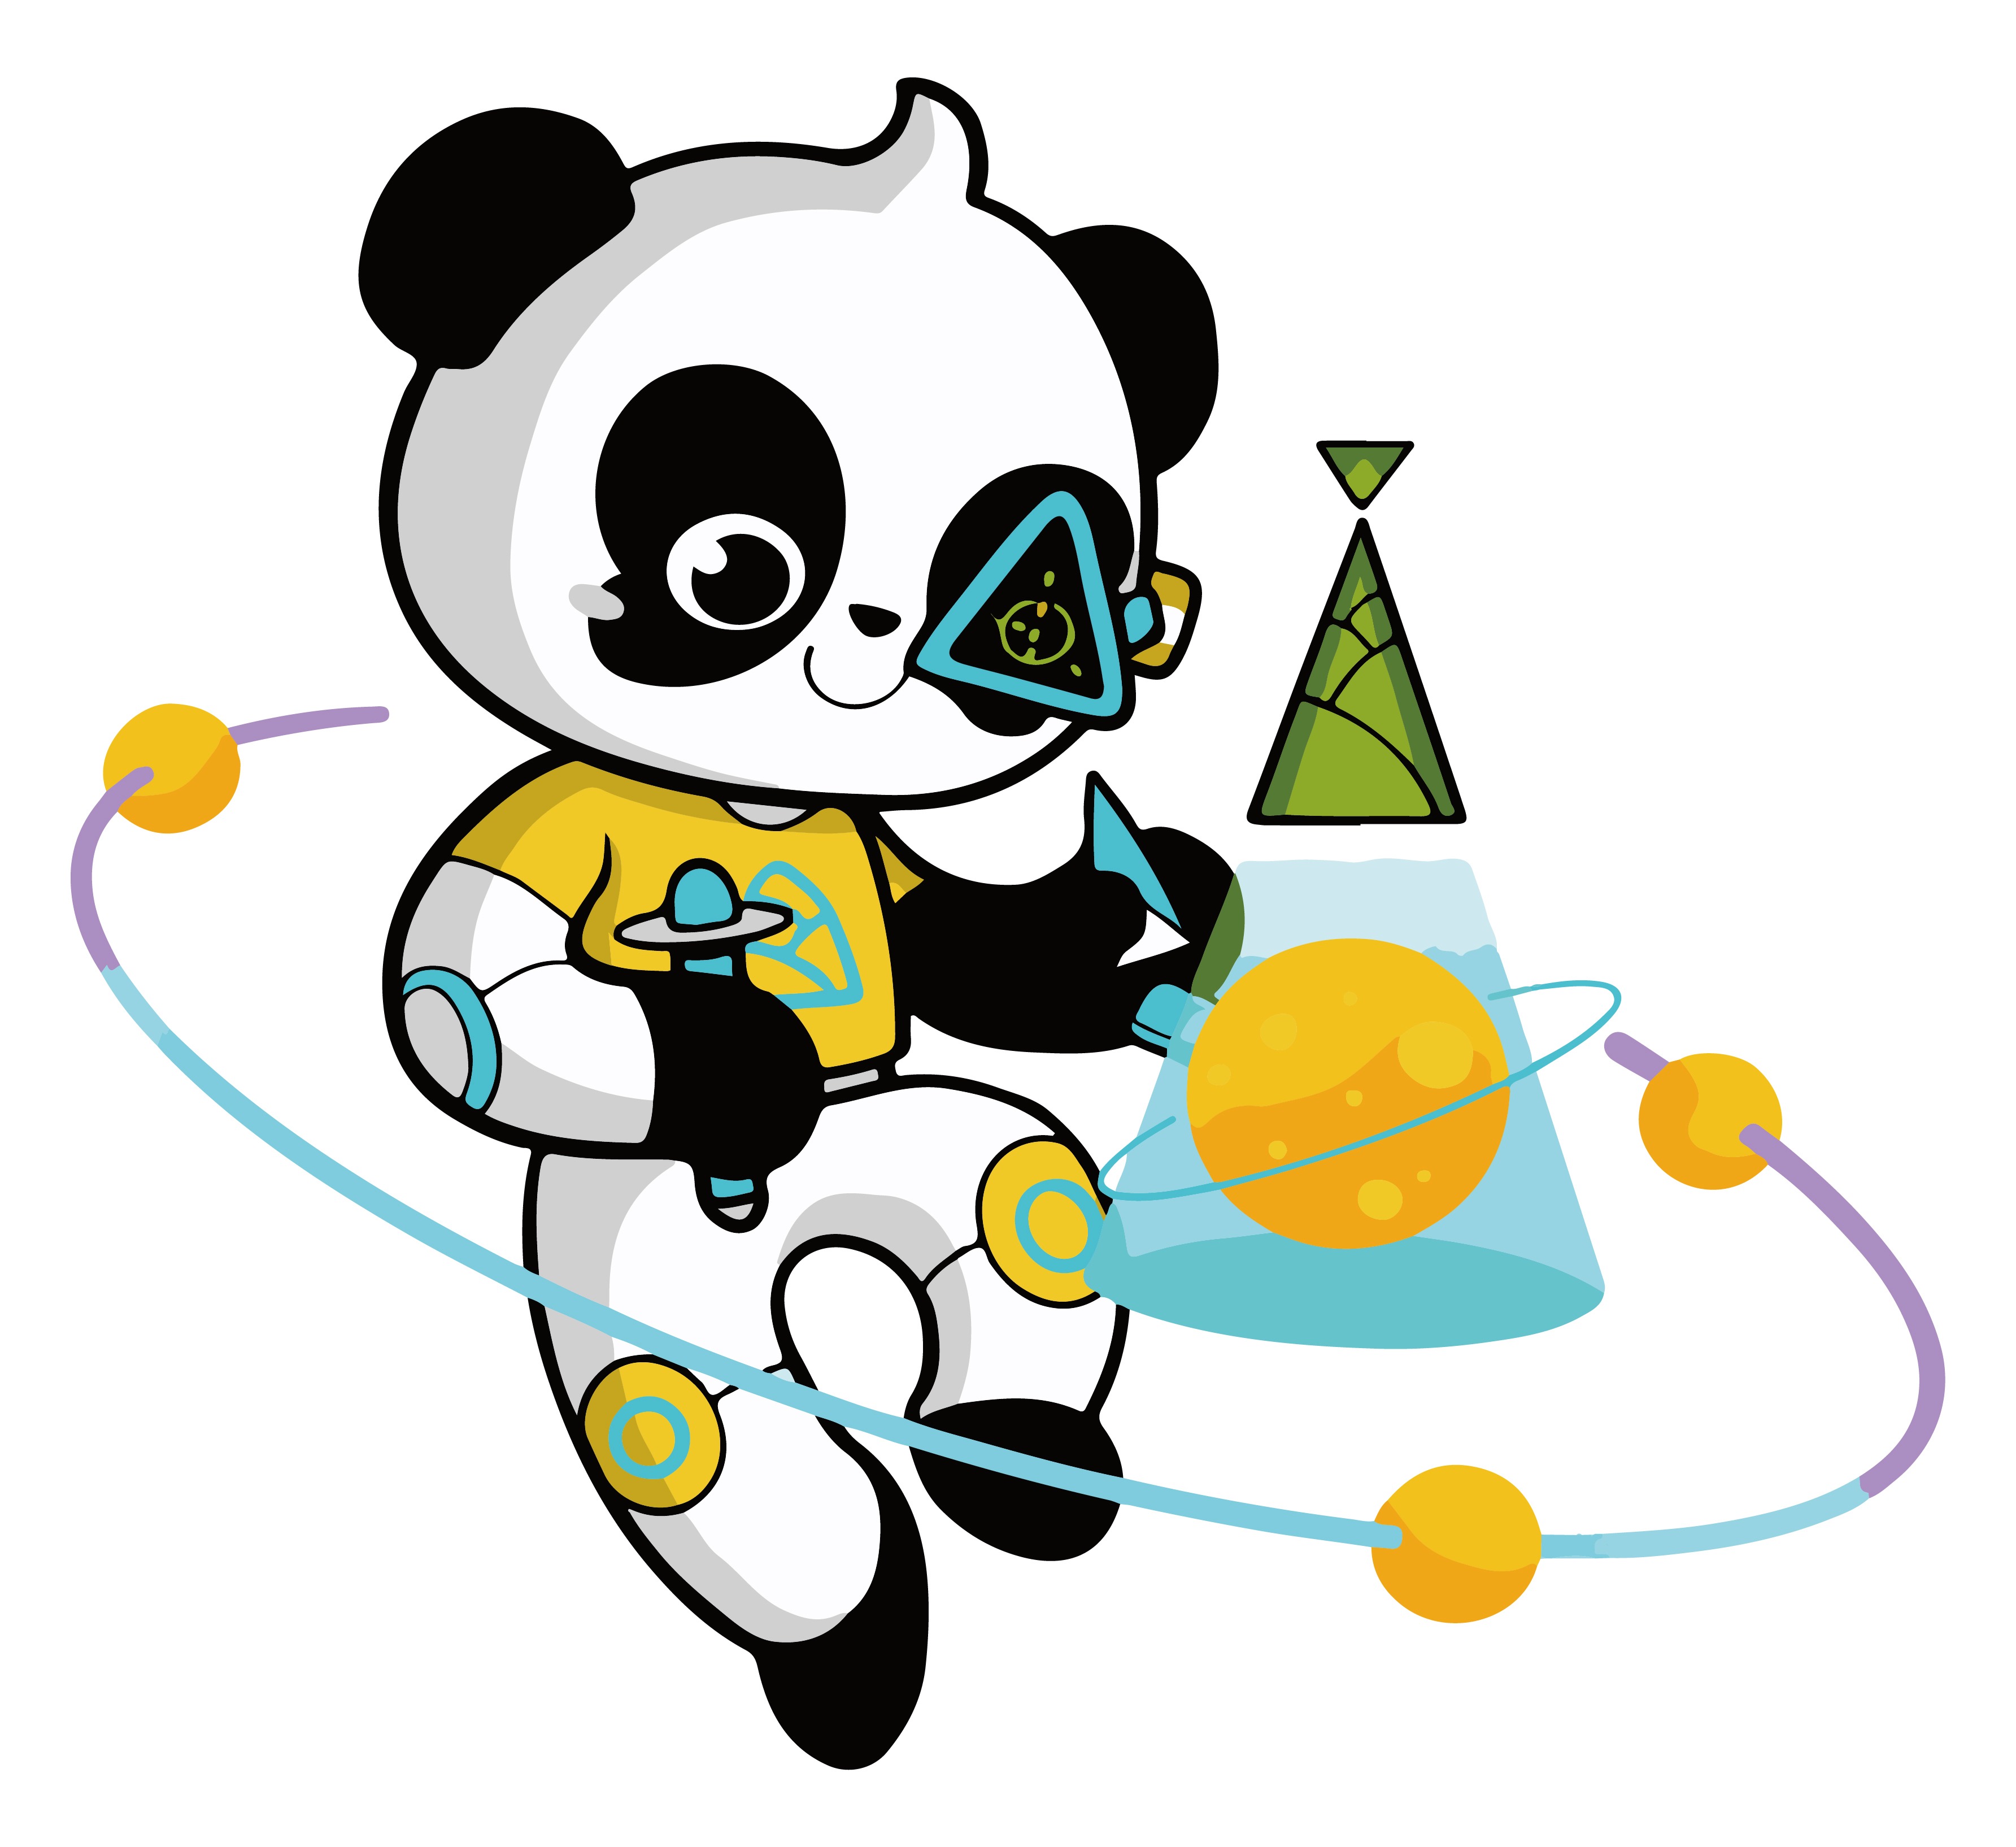 中国大熊猫国际形象设计全球招募大赛评选结果揭晓